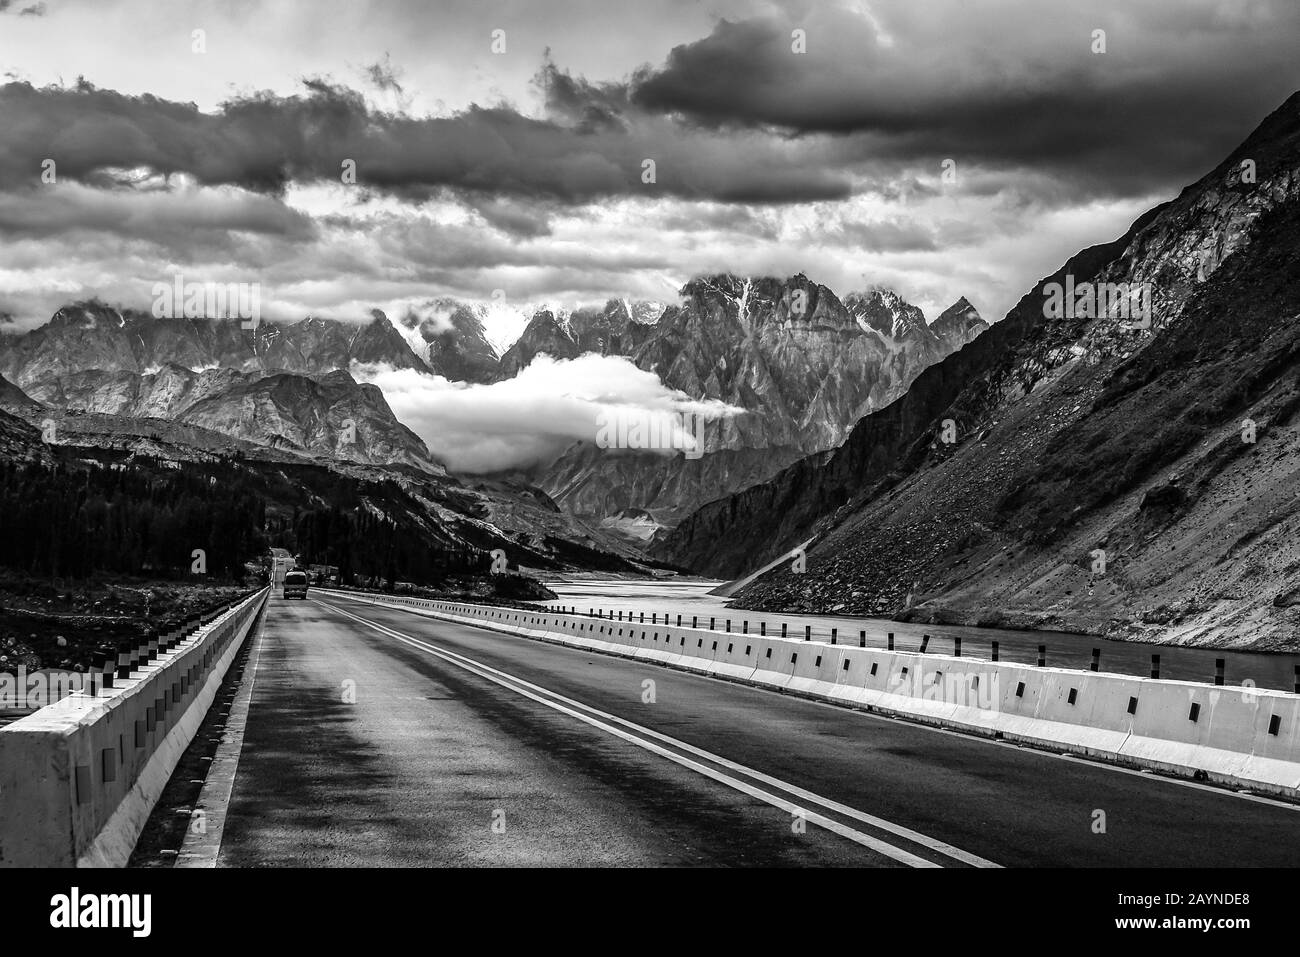 Paysage spectaculaire sur les routes montagneuses d'Asie centrale, entre le Tadjikistan, l'Afghanistan et le Pakistan Banque D'Images